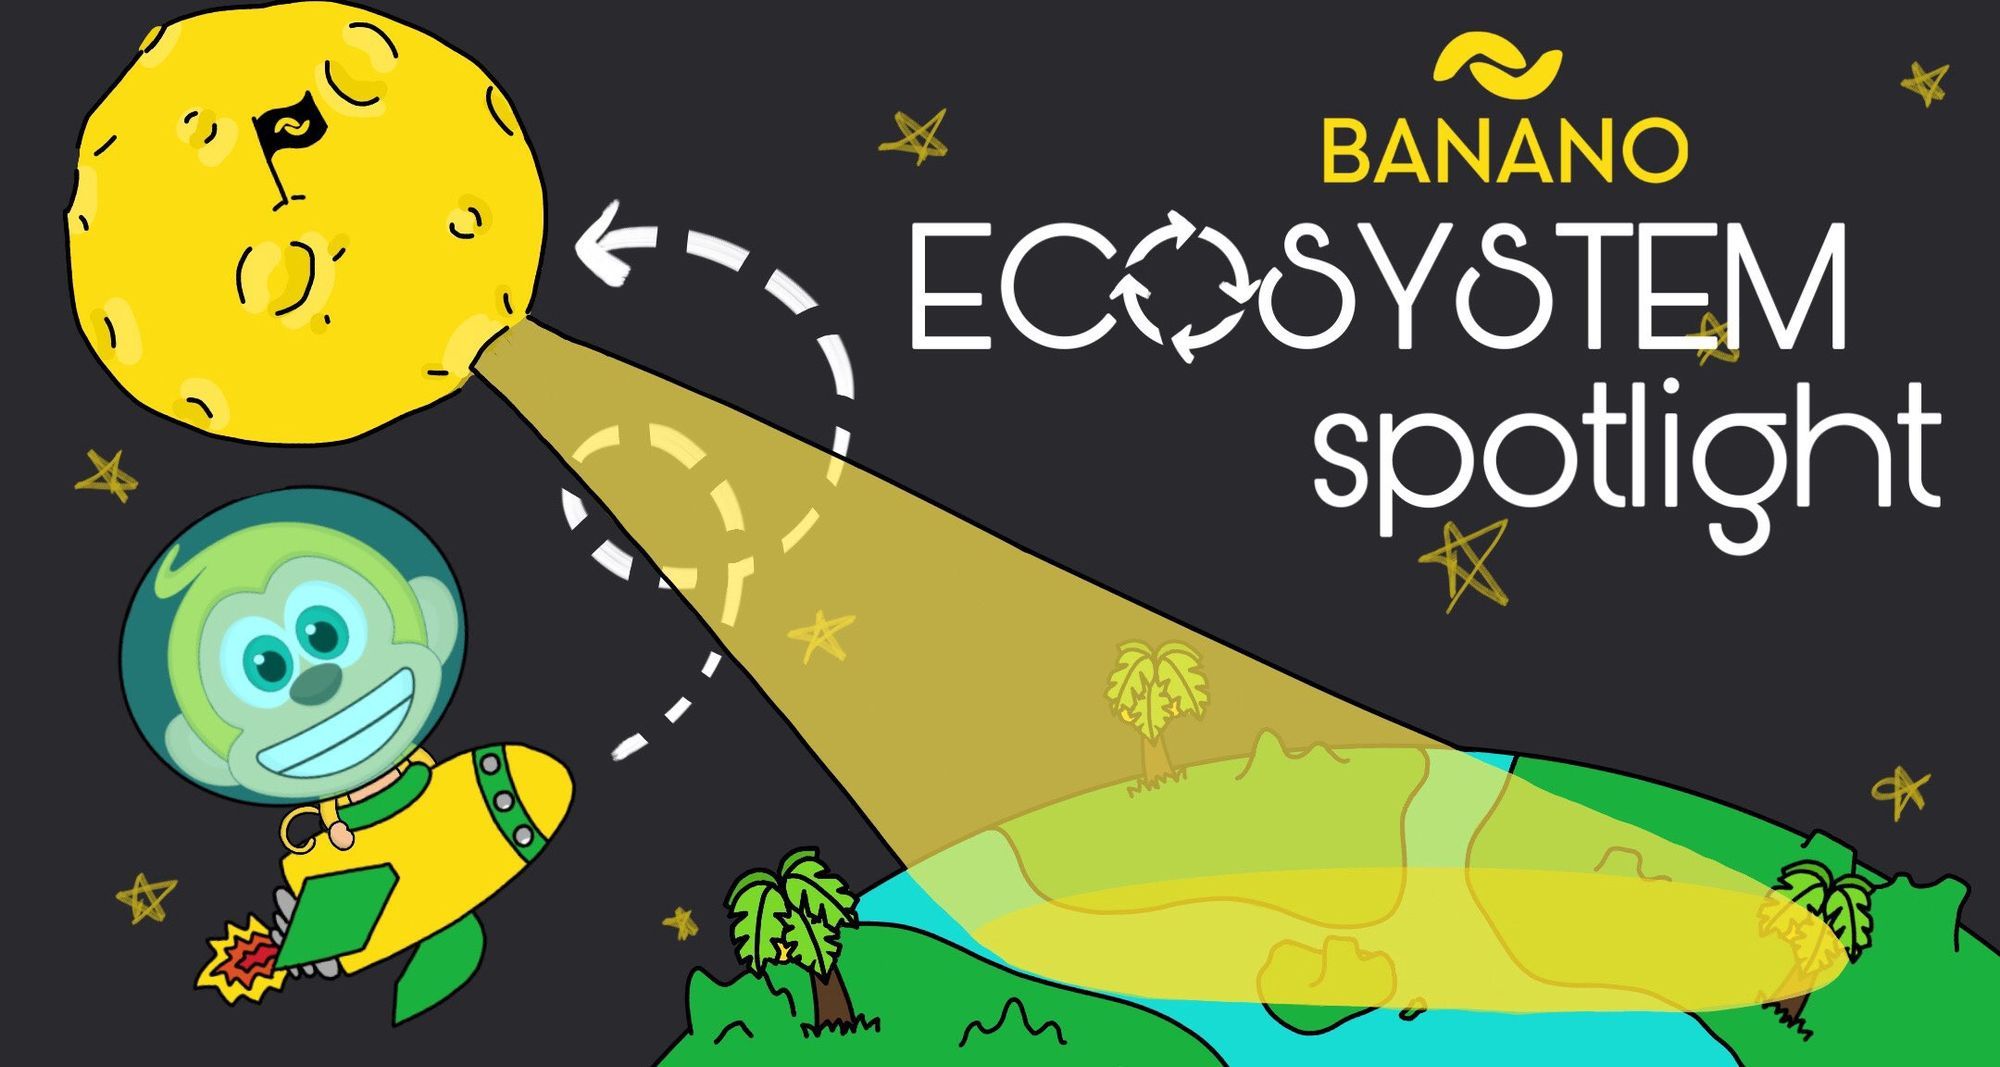 BANANO Ecosystem Spotlight #2: Kalium, BANANO’s Mobile Wallet